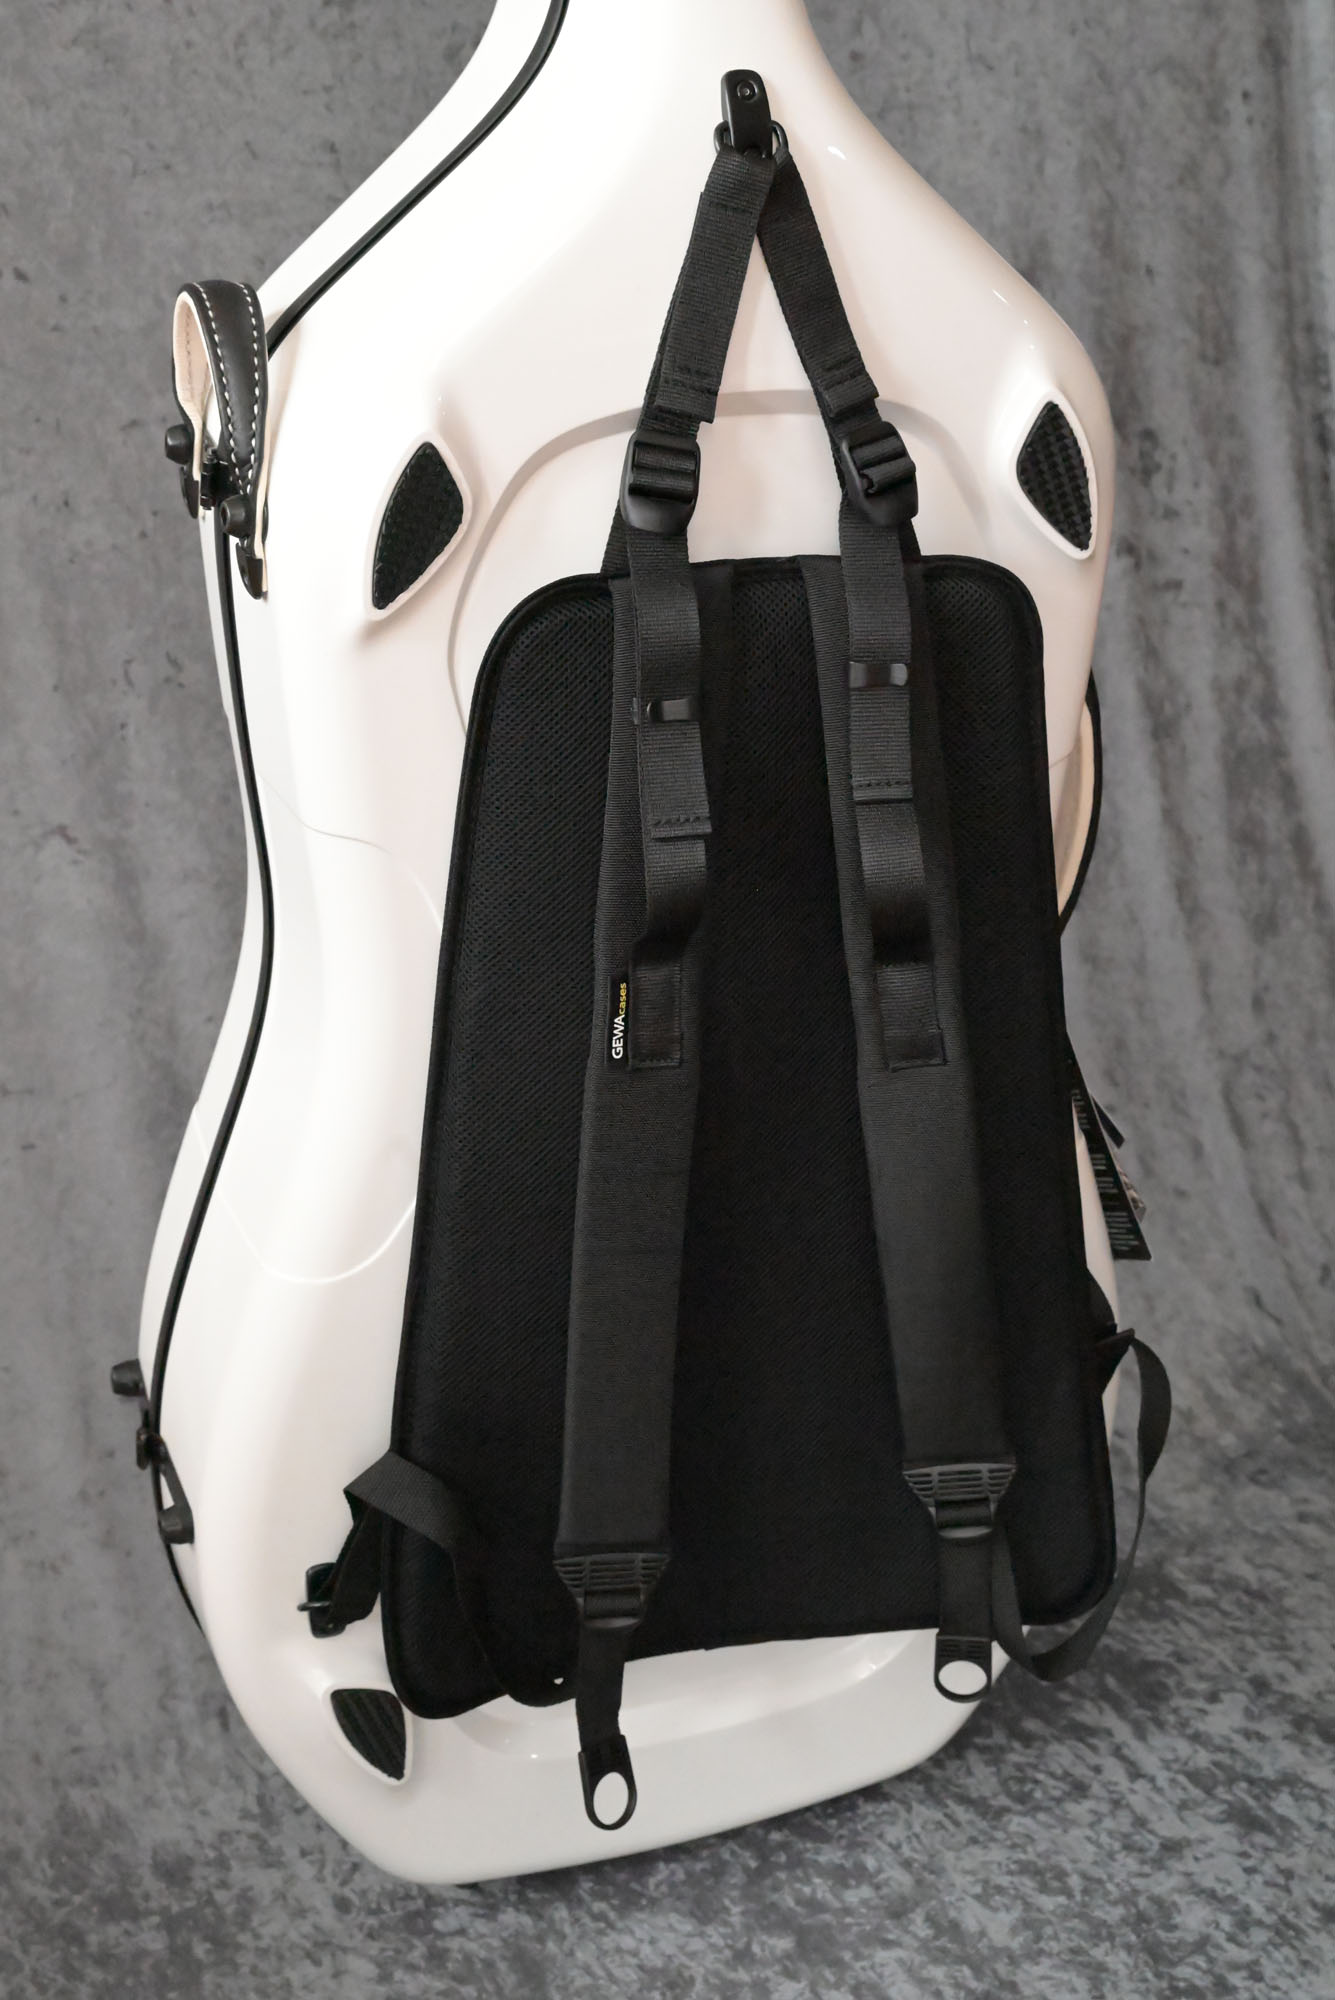 Buy 2 Pcs Shoulder Strap Bag Padded Bag Strap Erhu Violin Bag